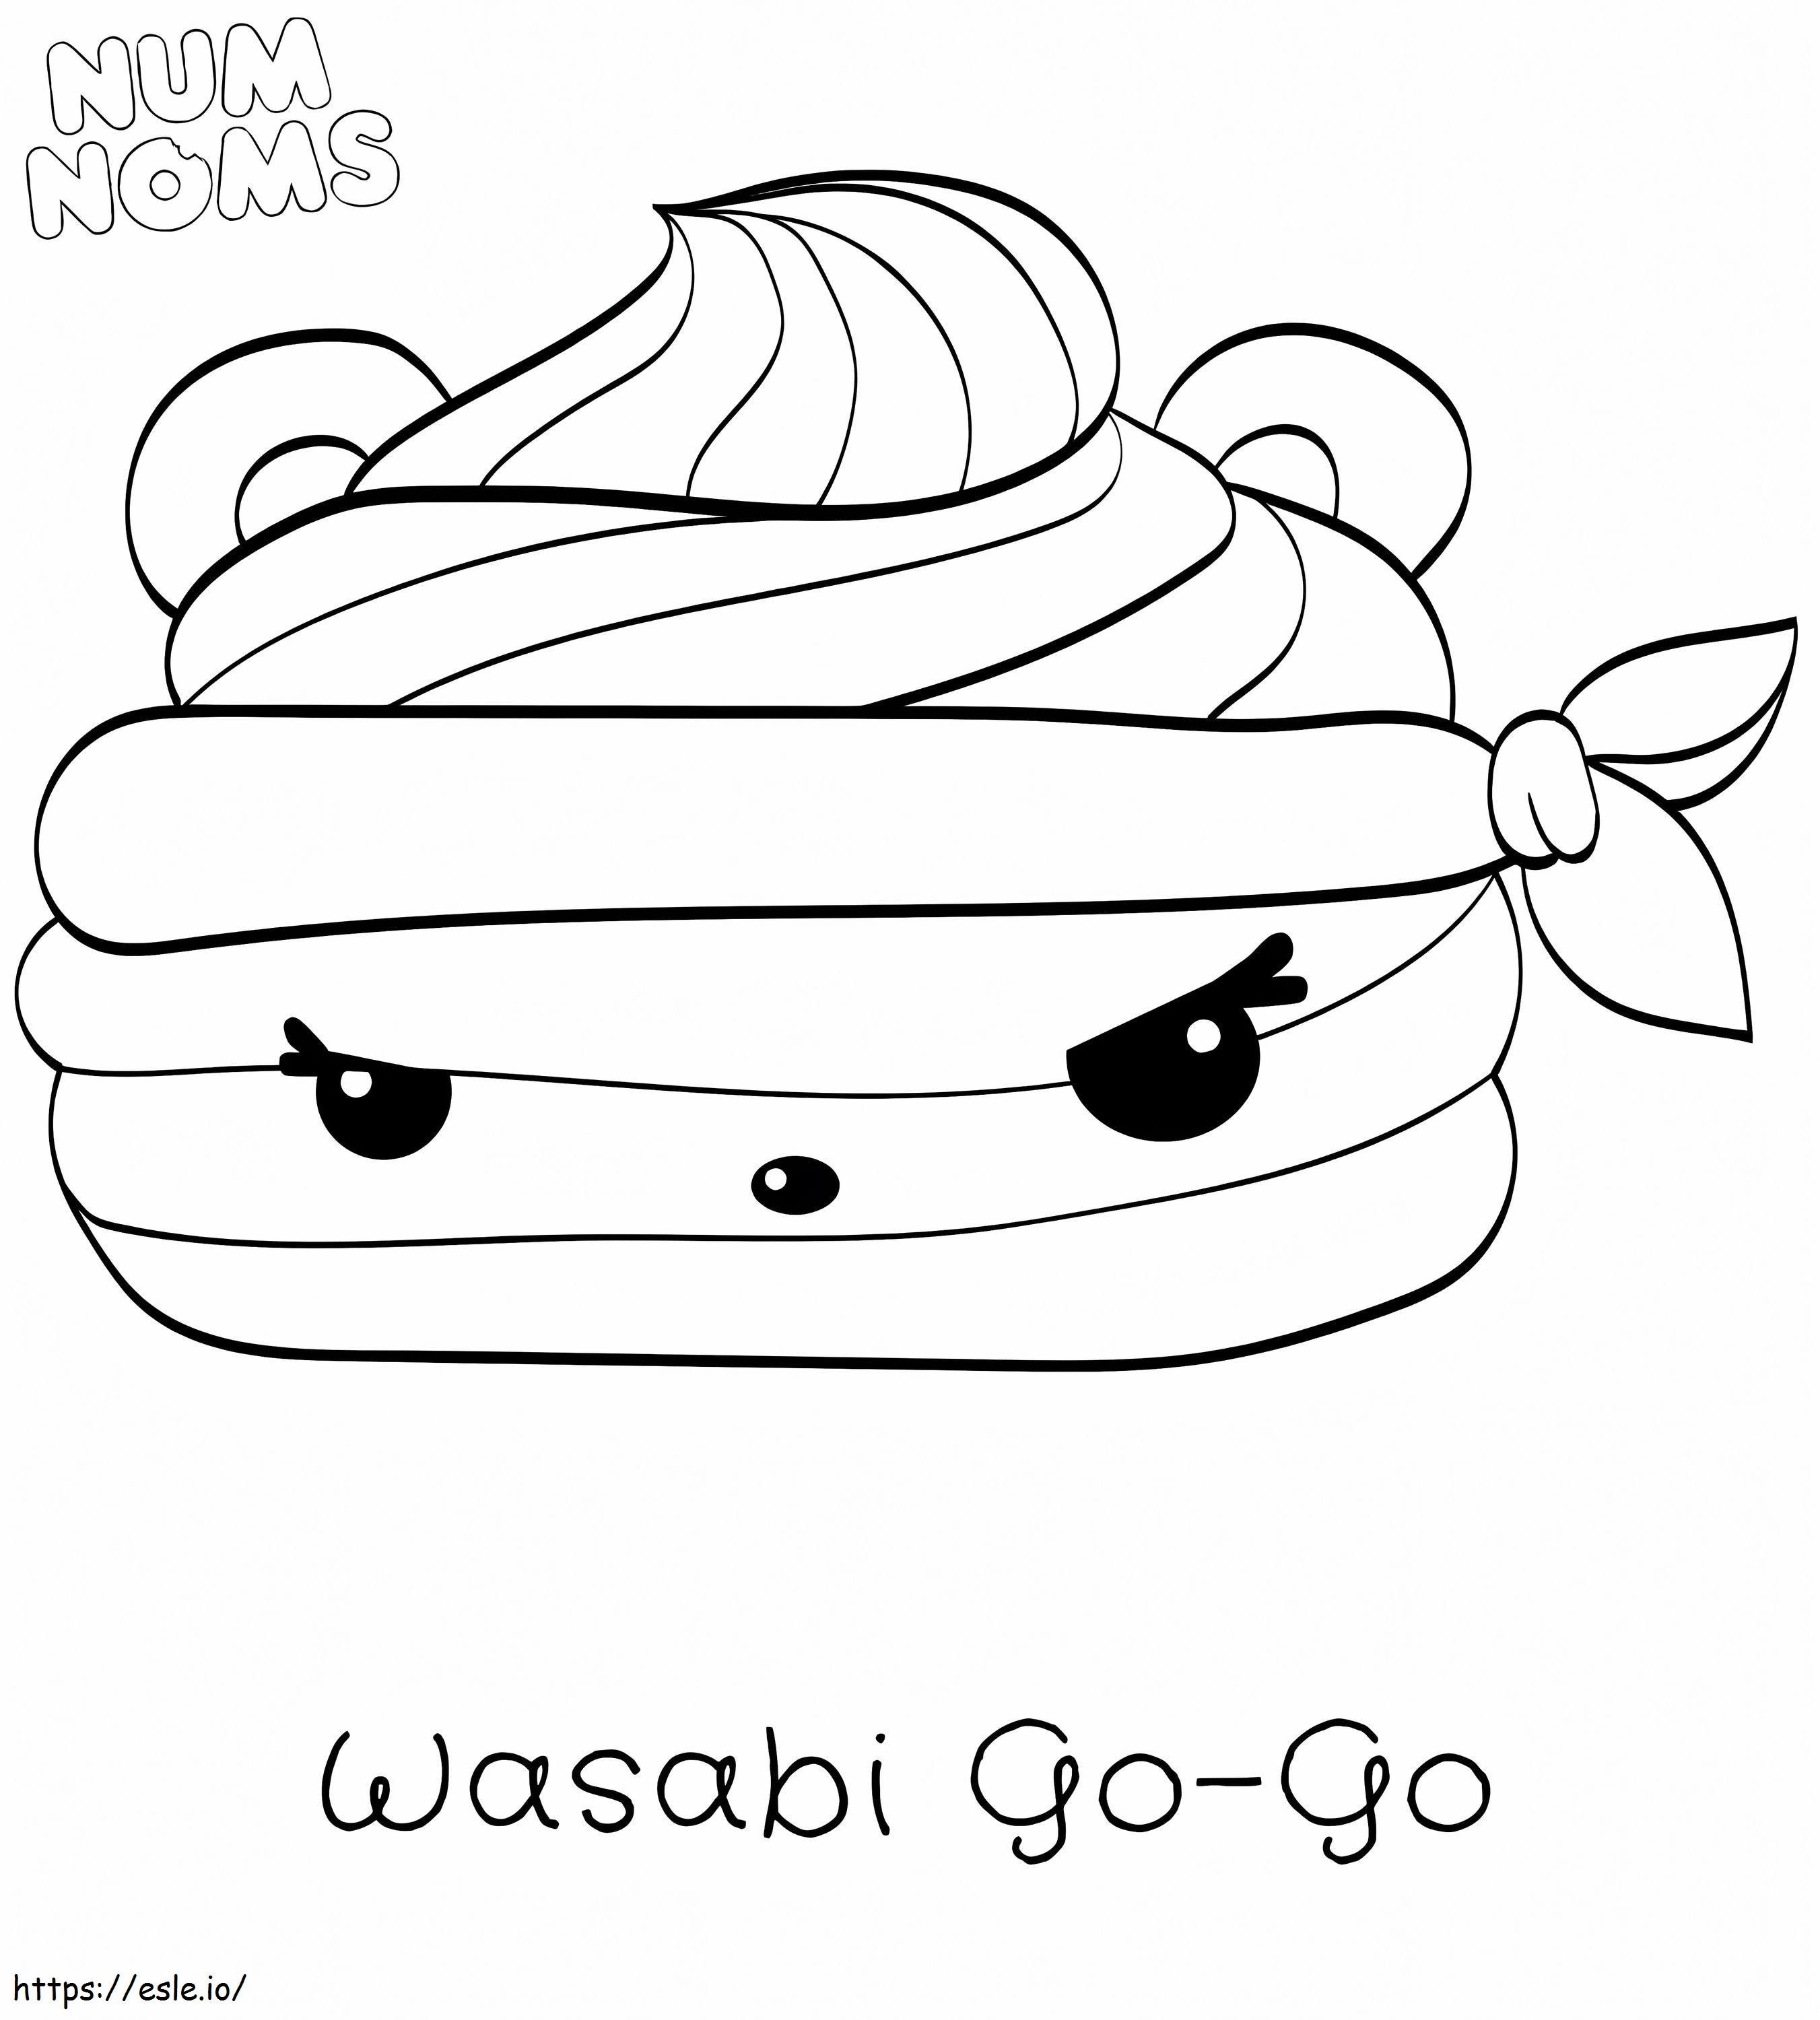 Fresko Wasabi Go Go und Num Noms ausmalbilder